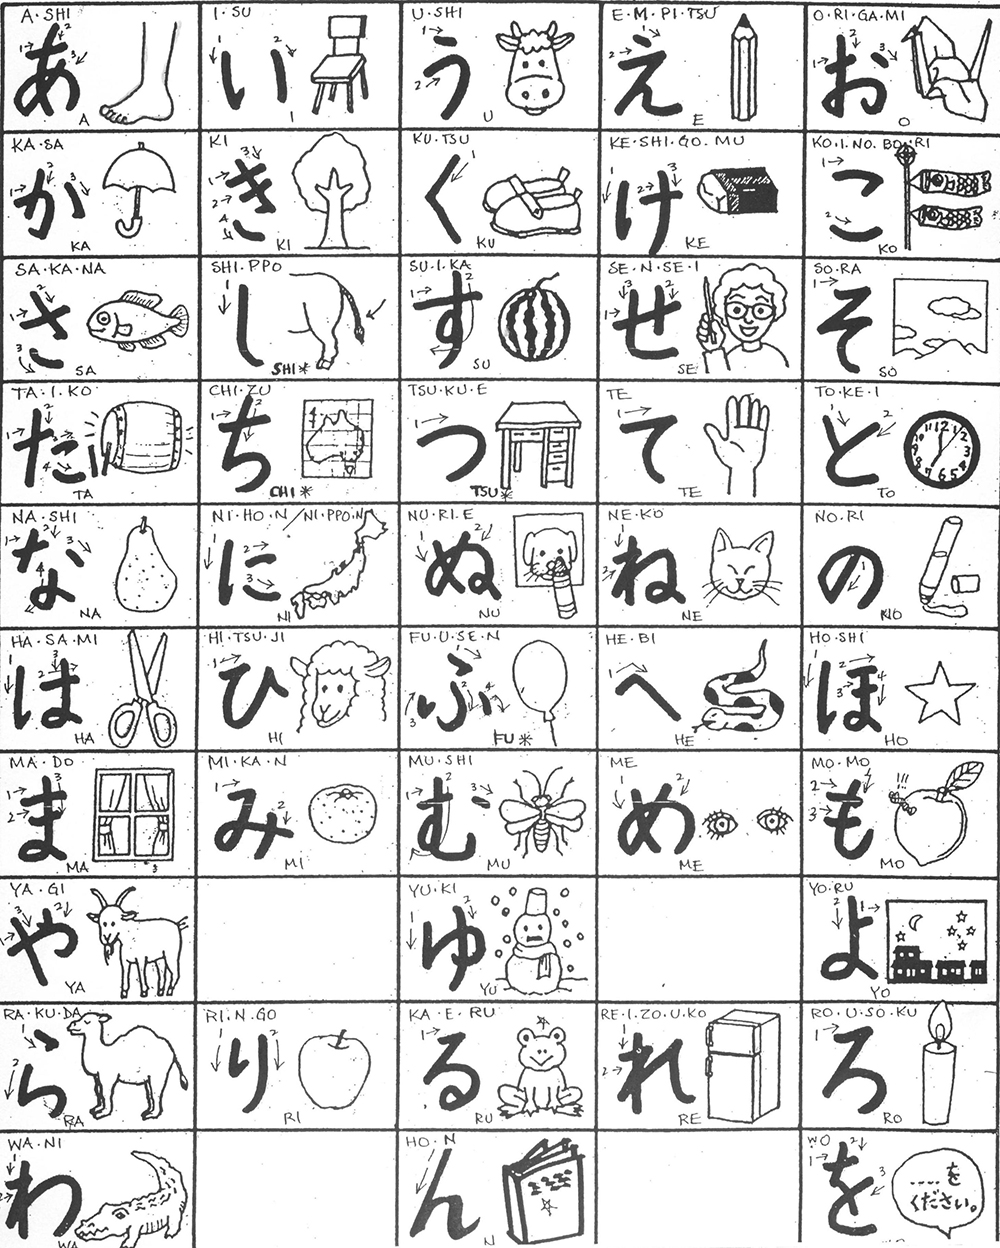 Some old hiragana chart